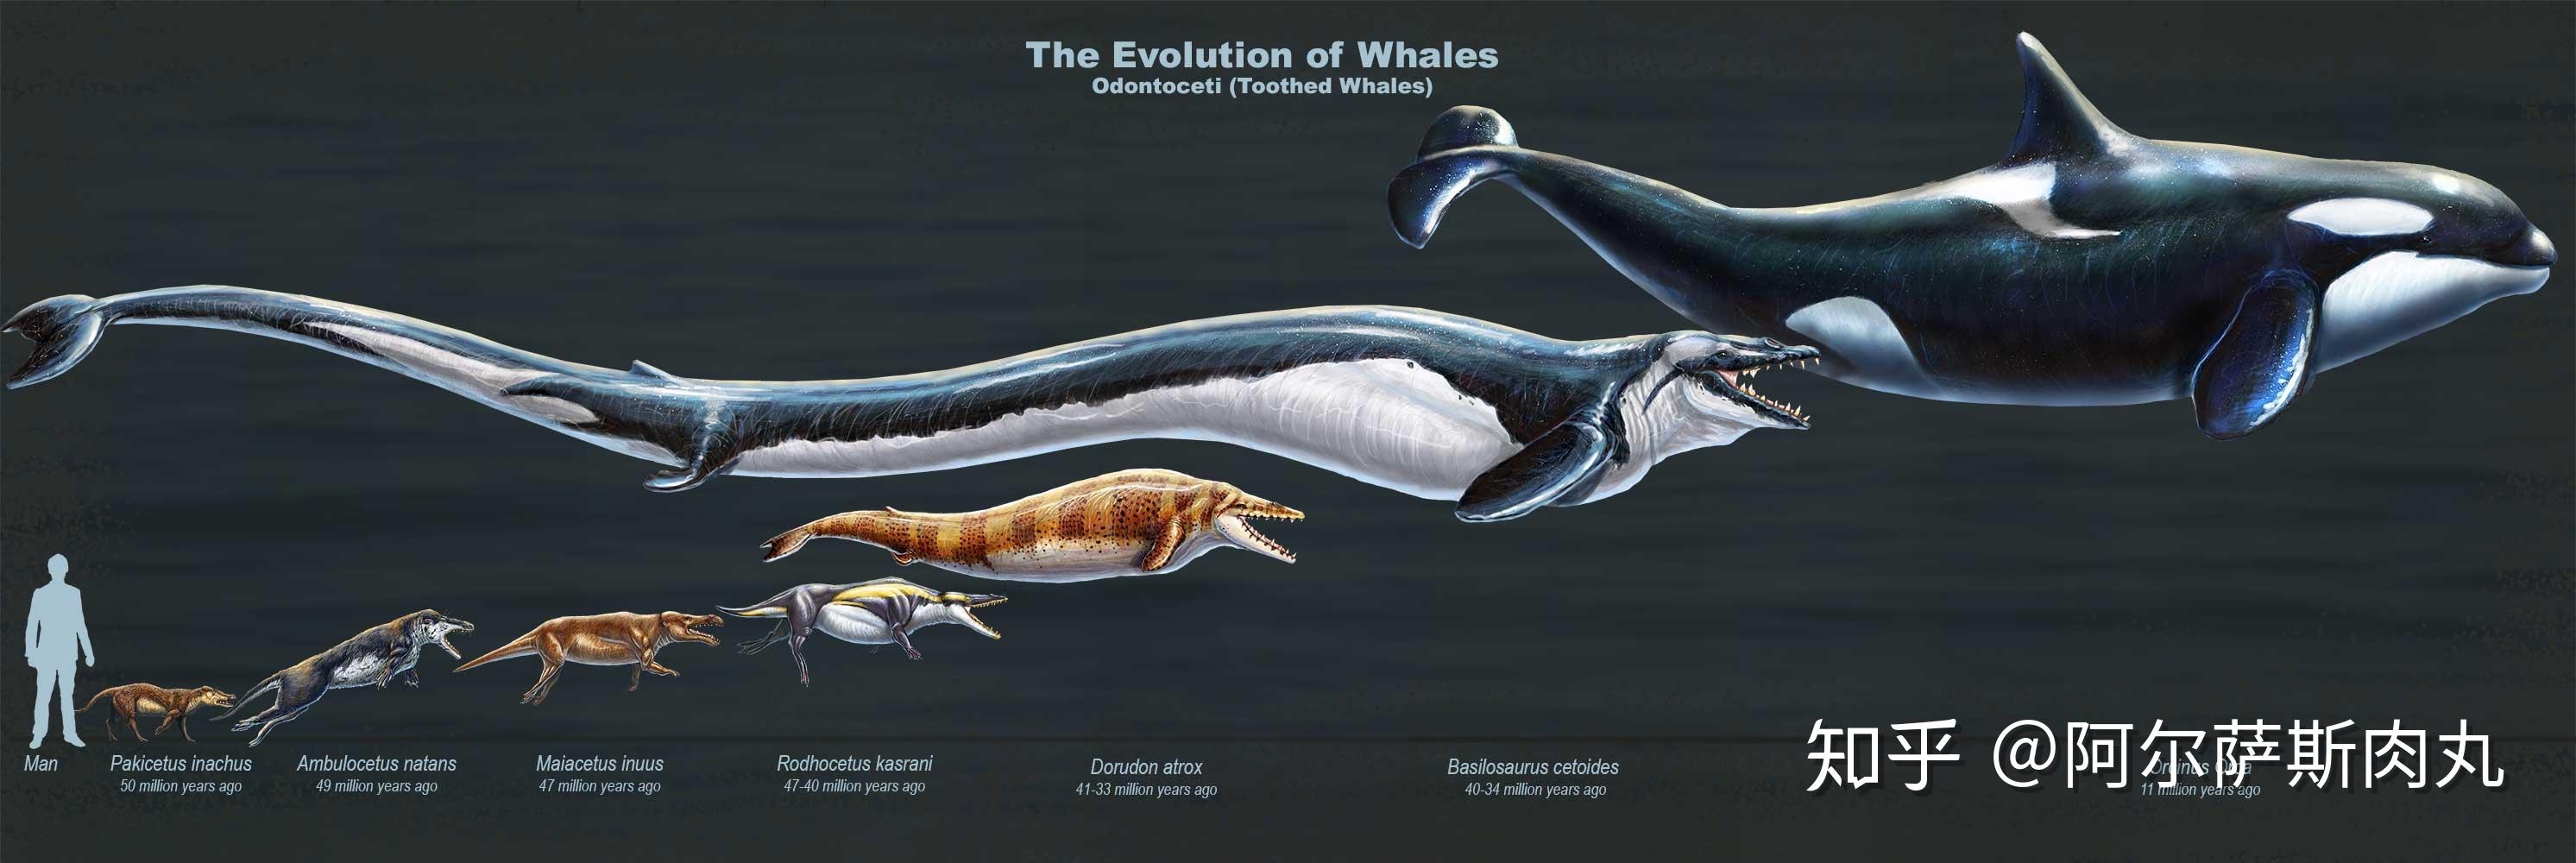 龙王鲸怎么画灭绝图片